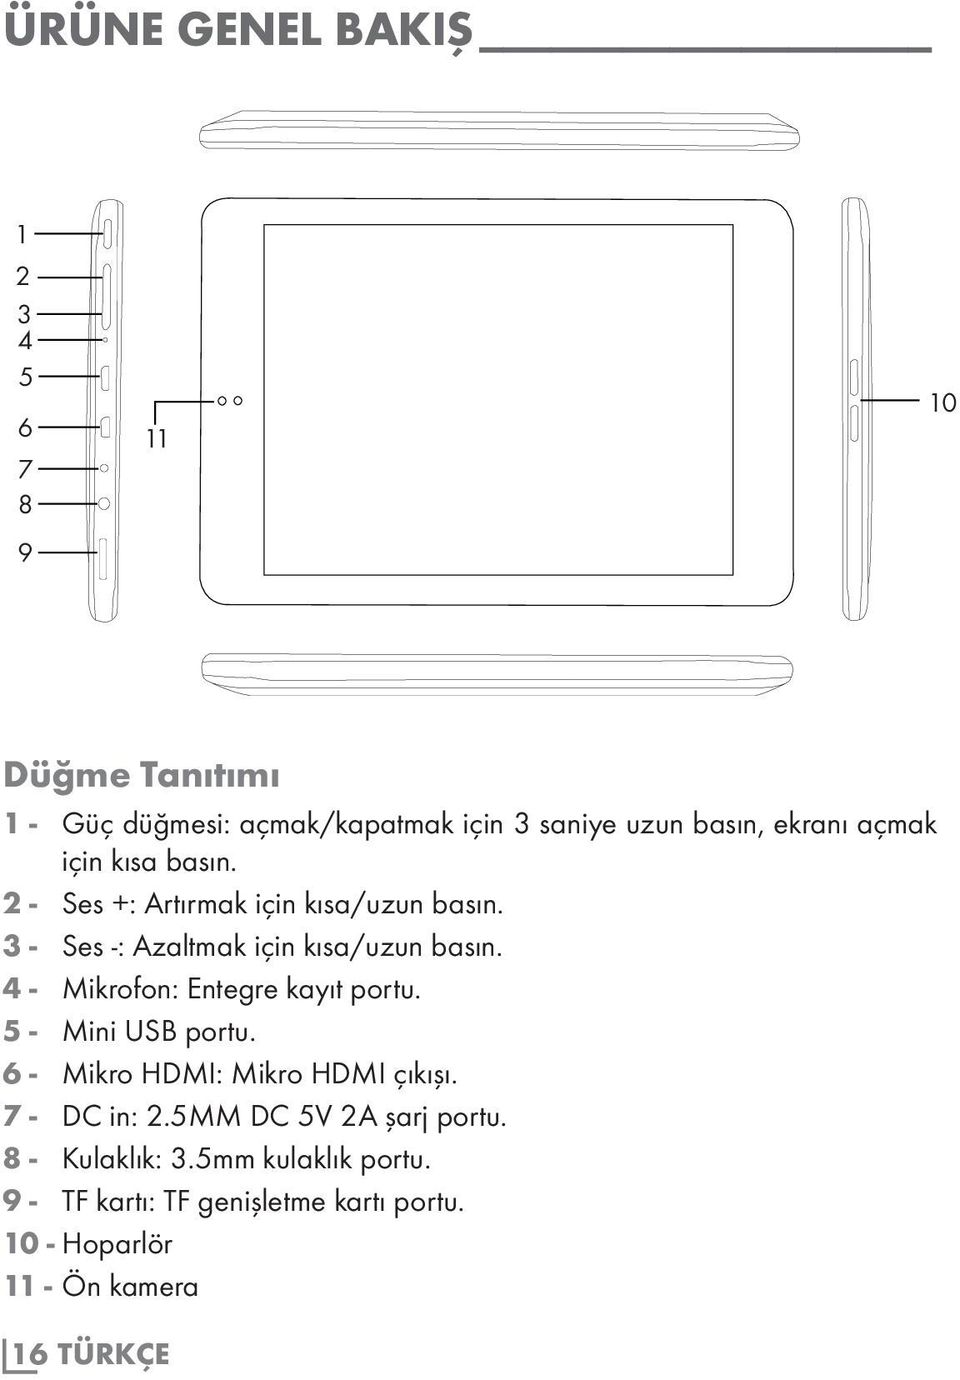 4 - Mikrofon: Entegre kayıt portu. 5 - Mini USB portu. 6 - Mikro HDMI: Mikro HDMI çıkışı. 7 - DC in: 2.